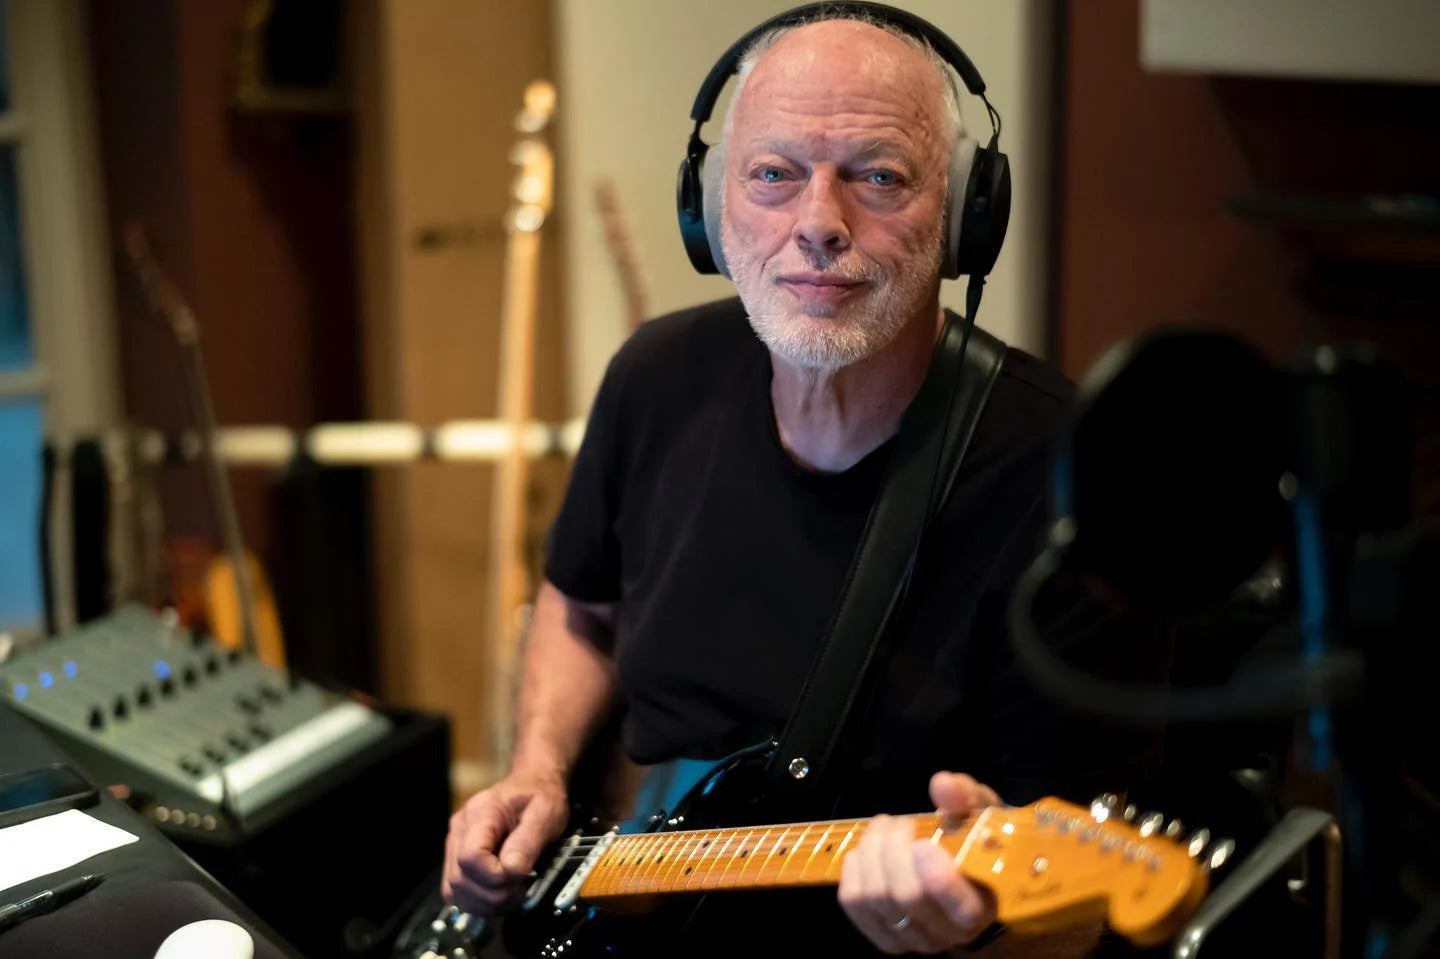 David Gilmour keert terug met langverwacht nieuw album 'Luck and Strange'